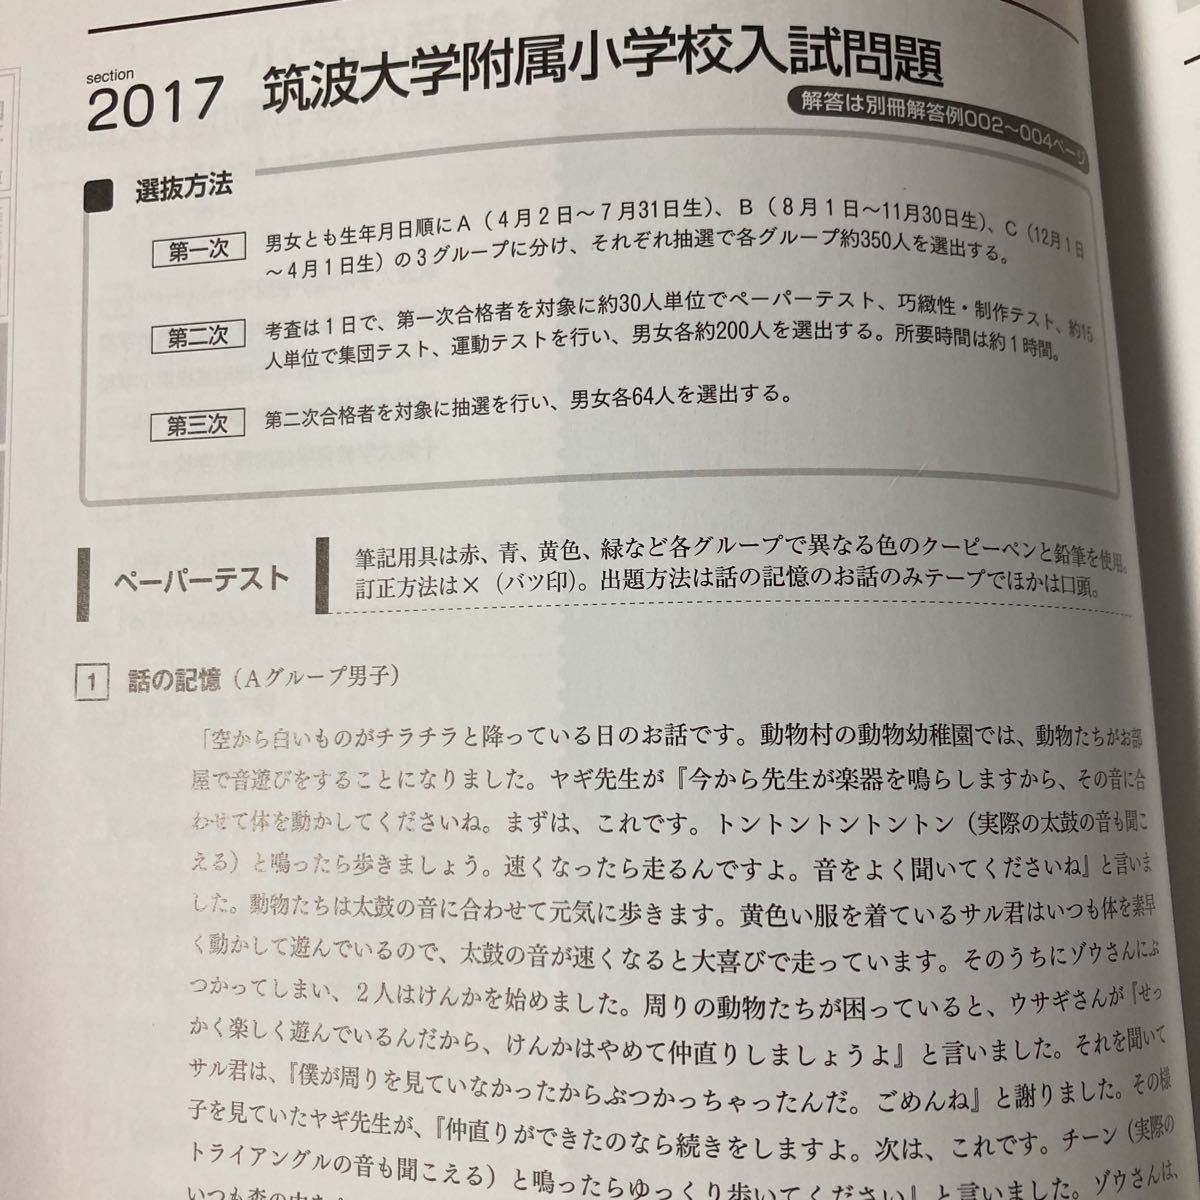 伸芽会 有名小学校入試問題集 2018 Vol.1 【送料無料】_画像3